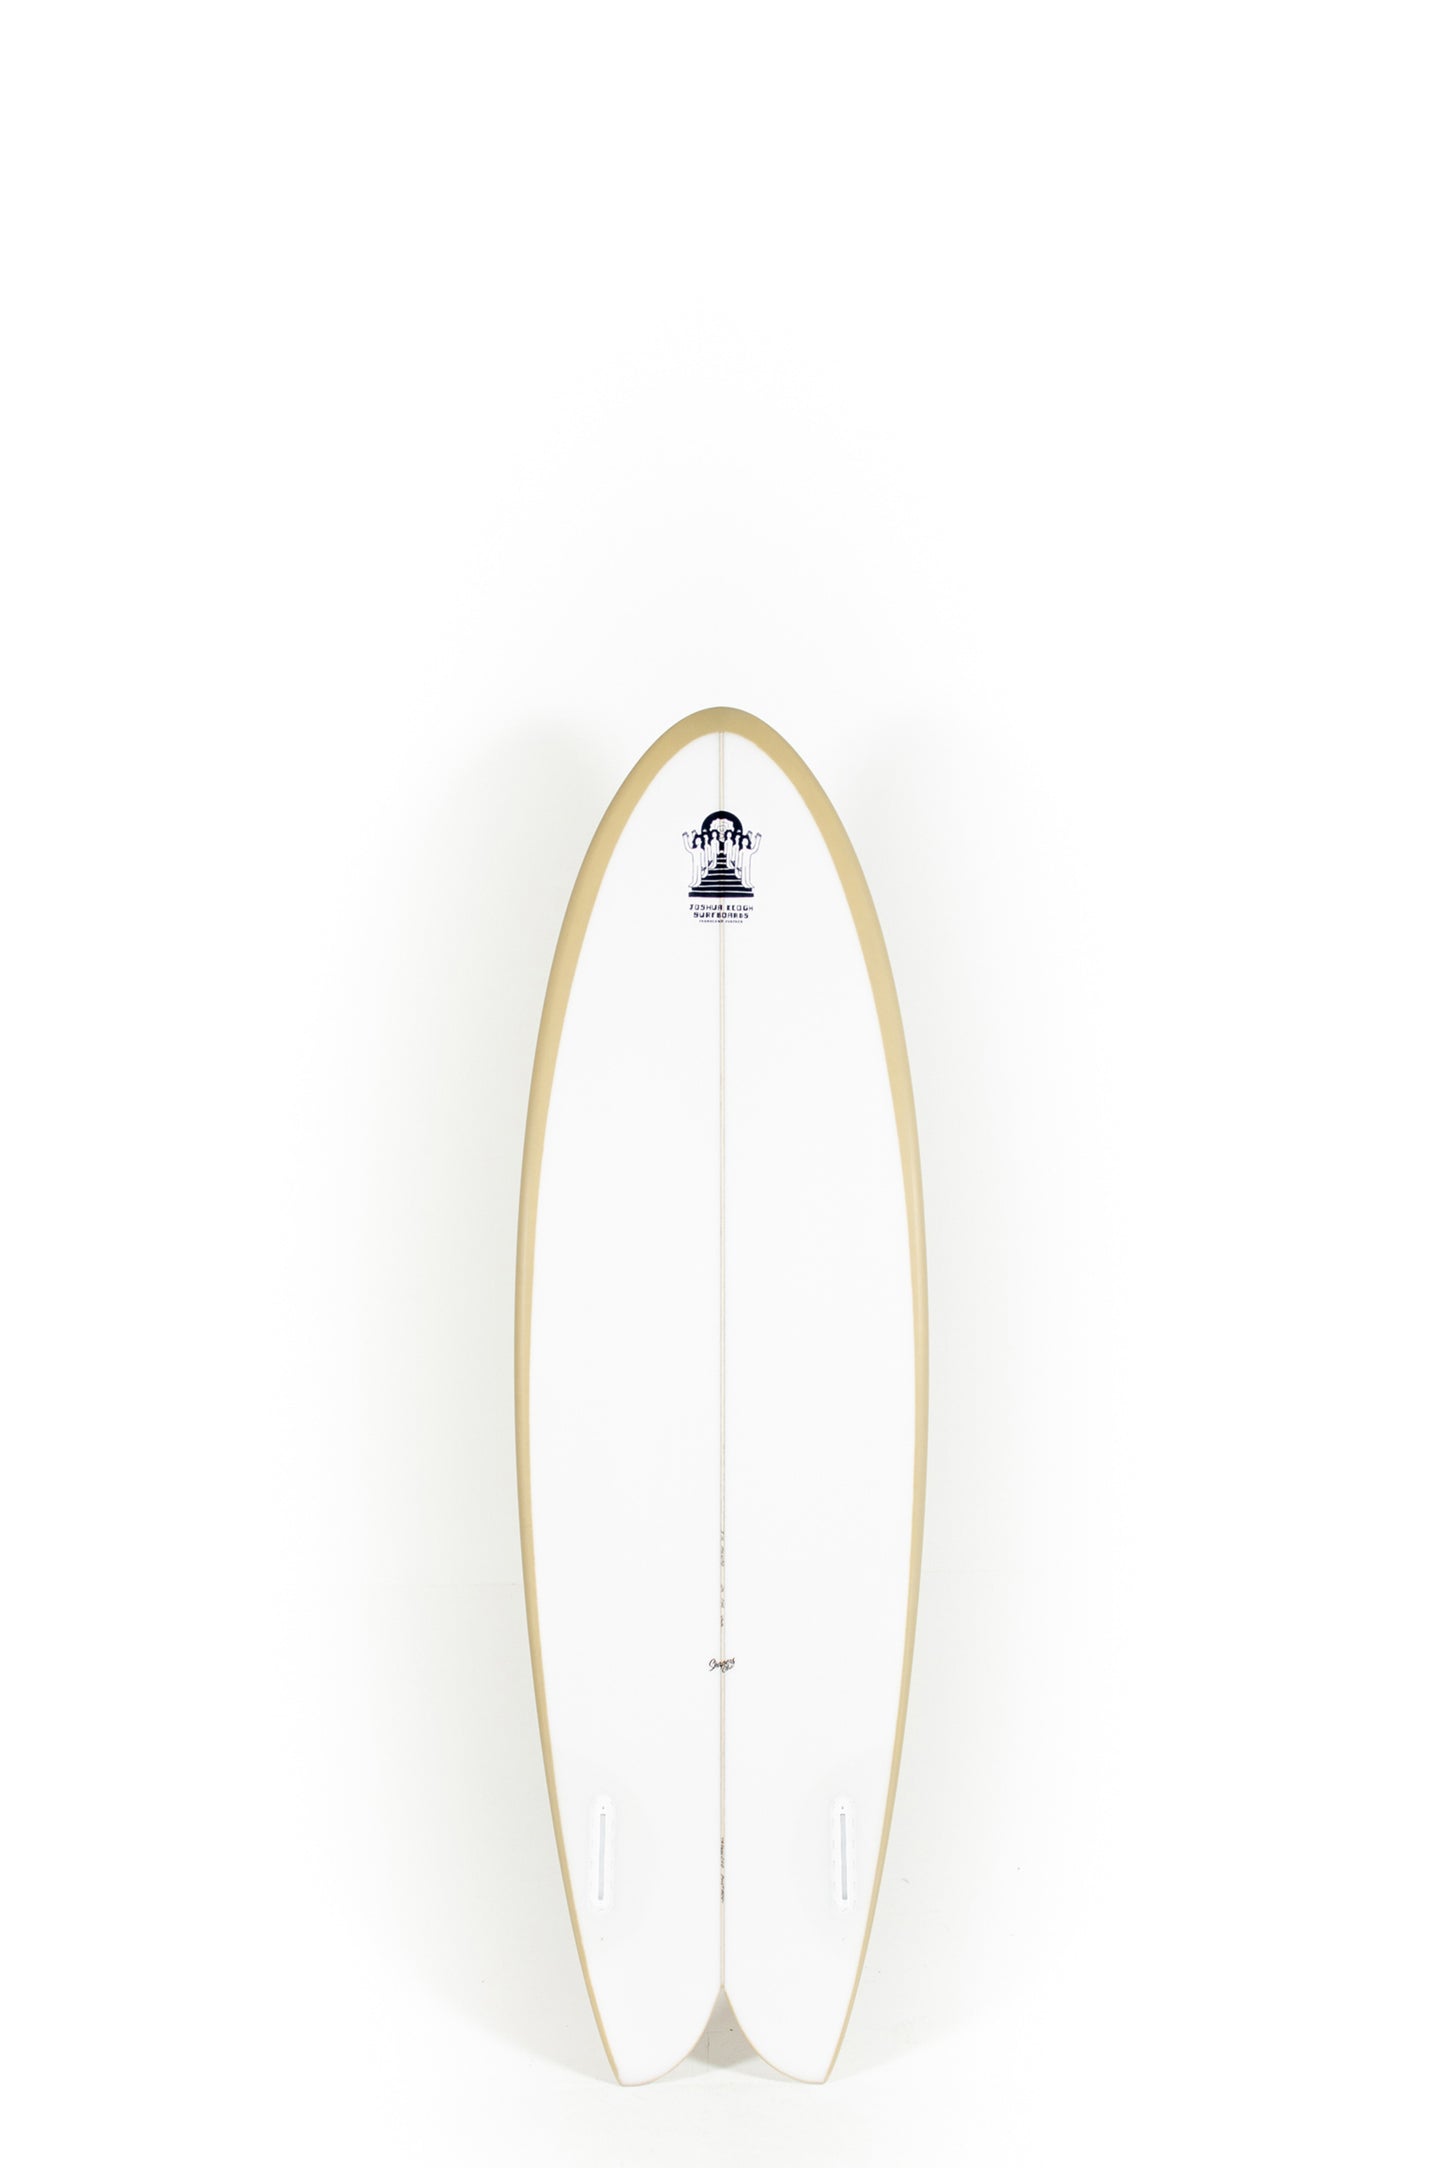 Pukas Surf Shop_Joshua Keogh Surfboard - MONAD by Joshua Keogh - 5'10" x 20 7/8 x 2 1/2 - MONAD510